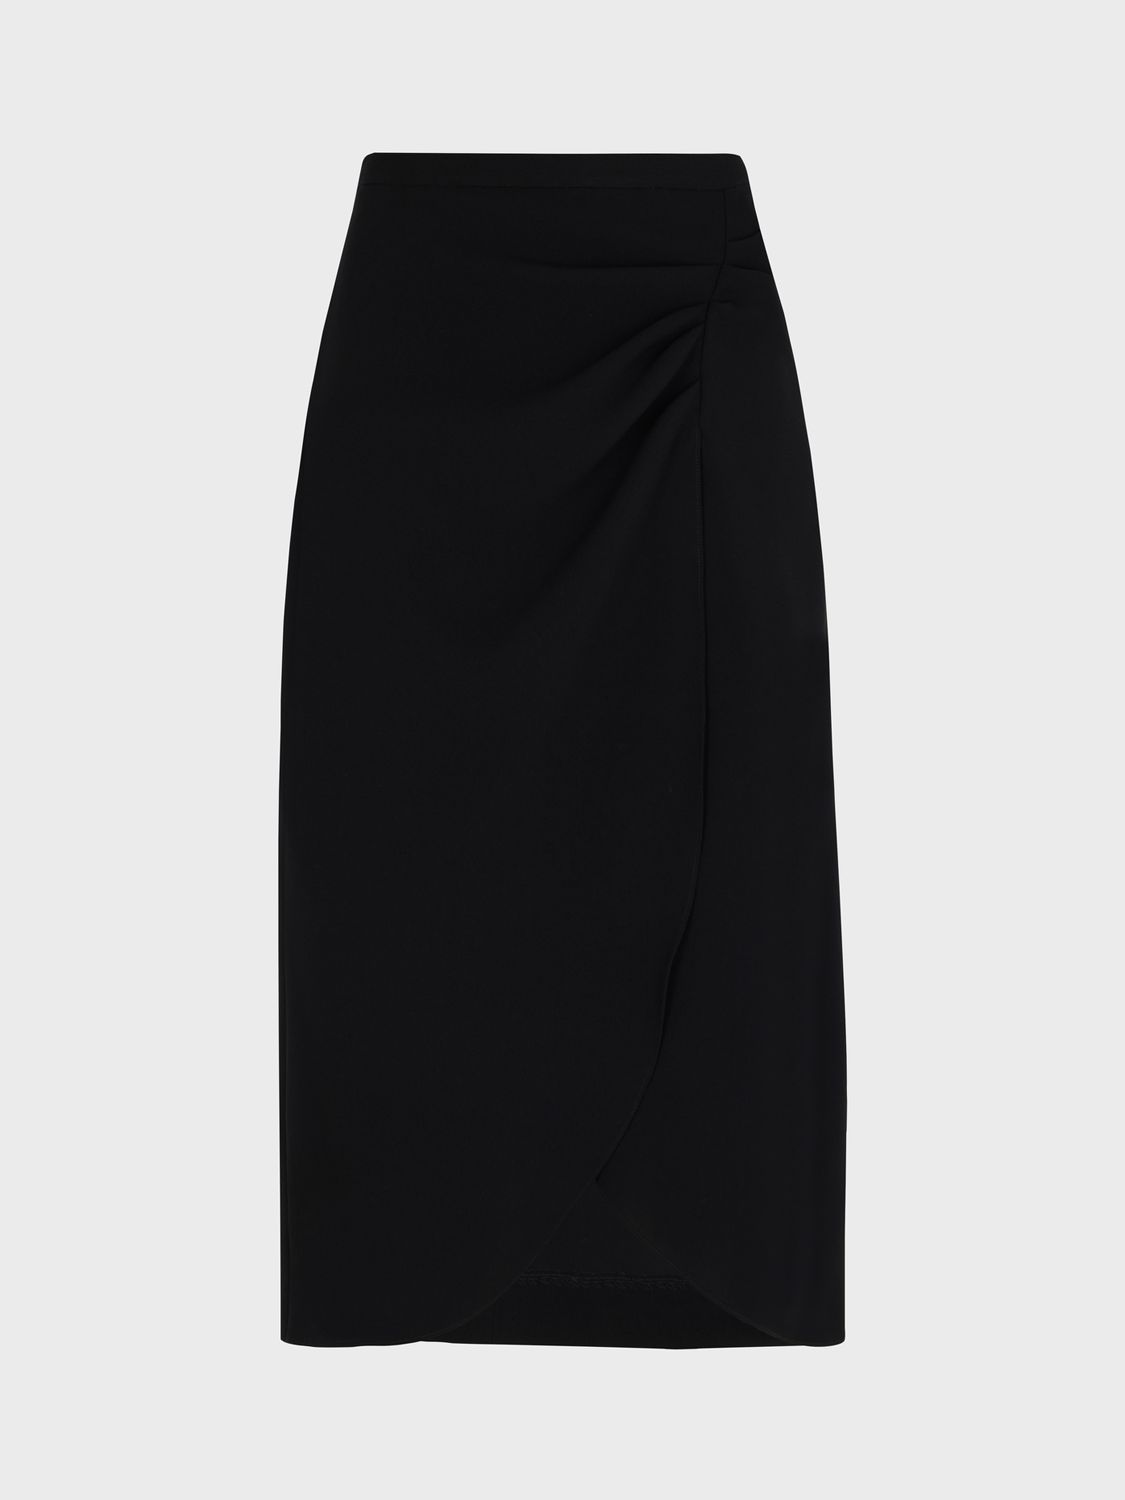 Gerard Darel Bertile Midi Skirt, Black at John Lewis & Partners